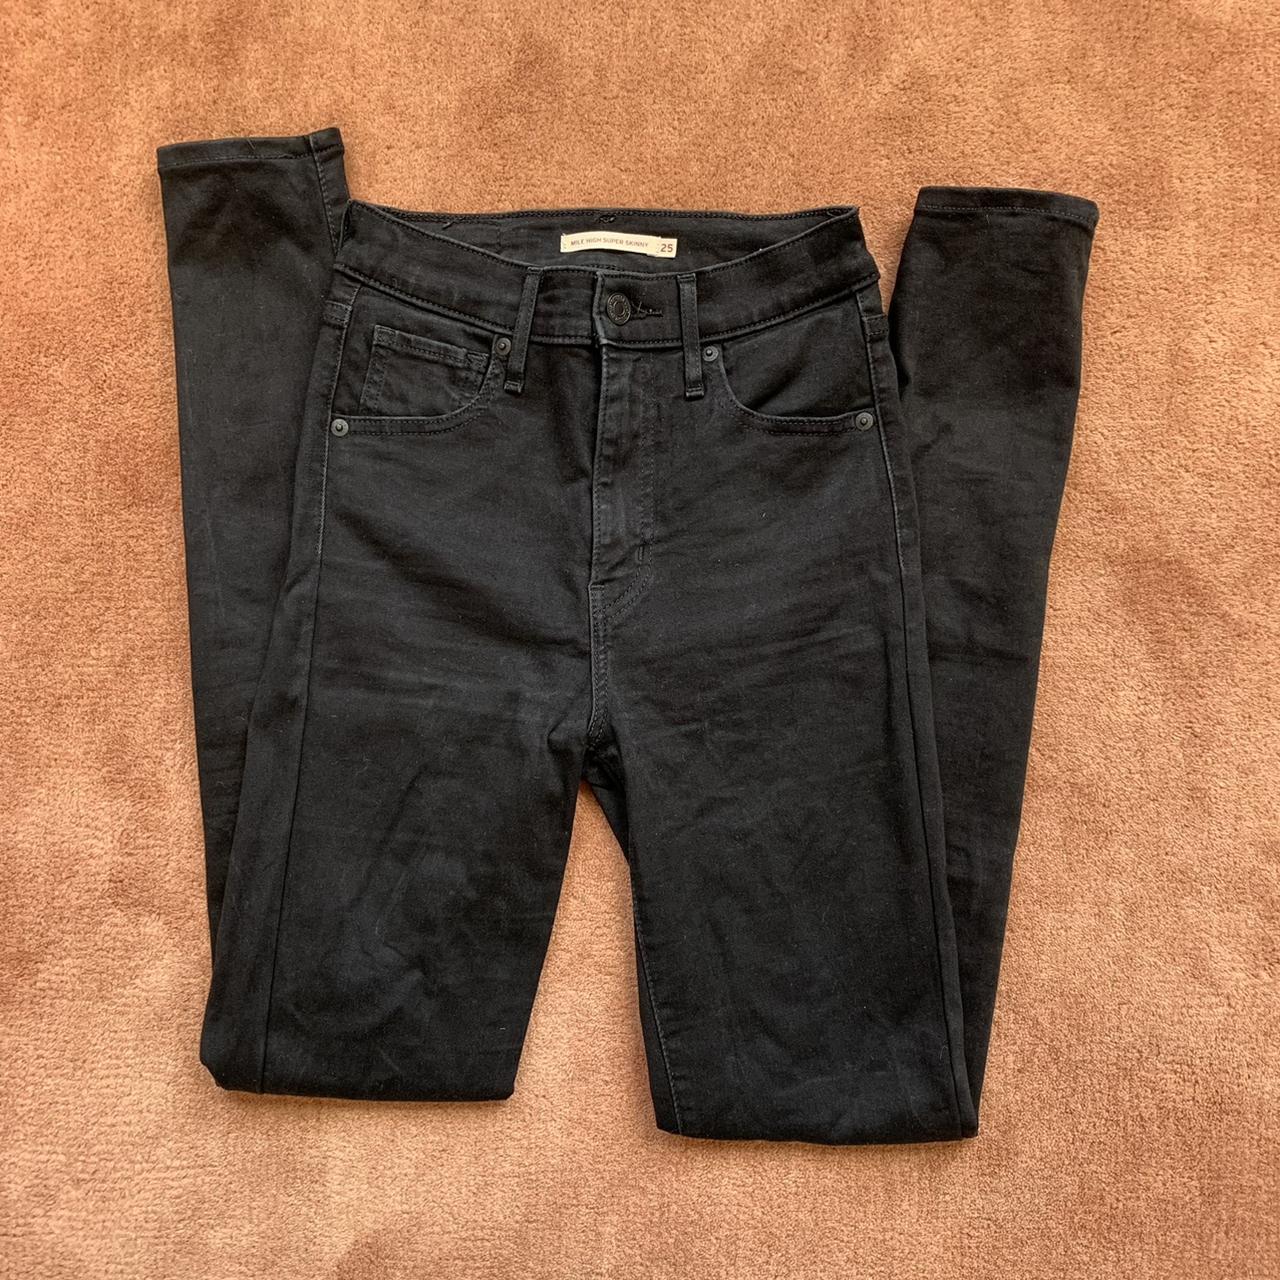 LEVIS - Mile high super skinny black jeans. 25.... - Depop